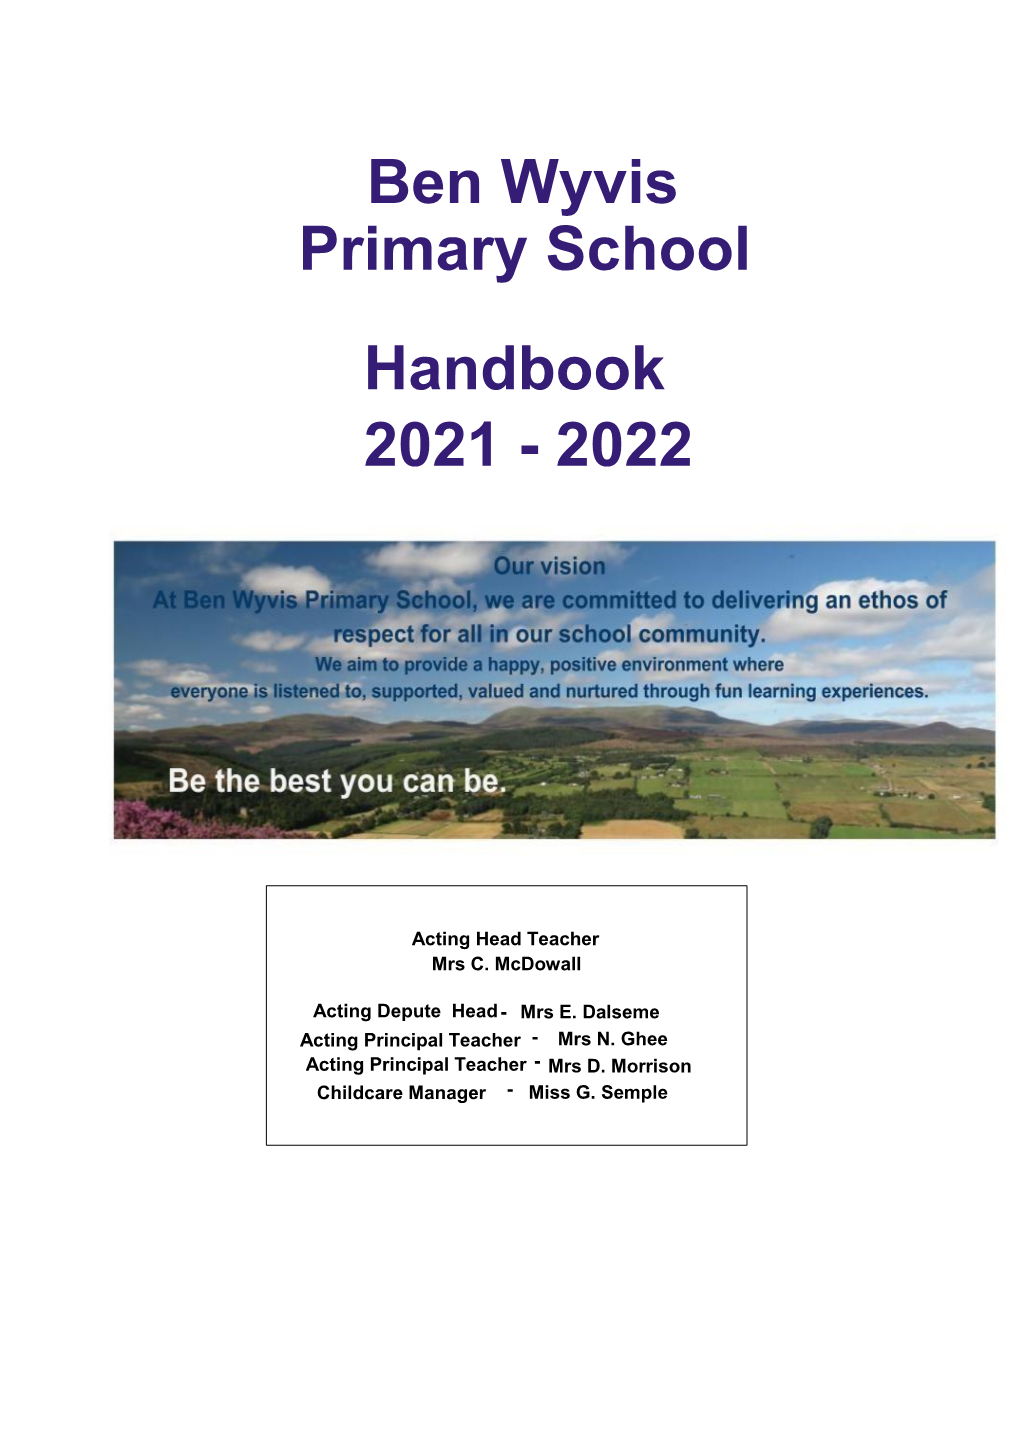 Ben Wyvis Primary School Handbook 2021